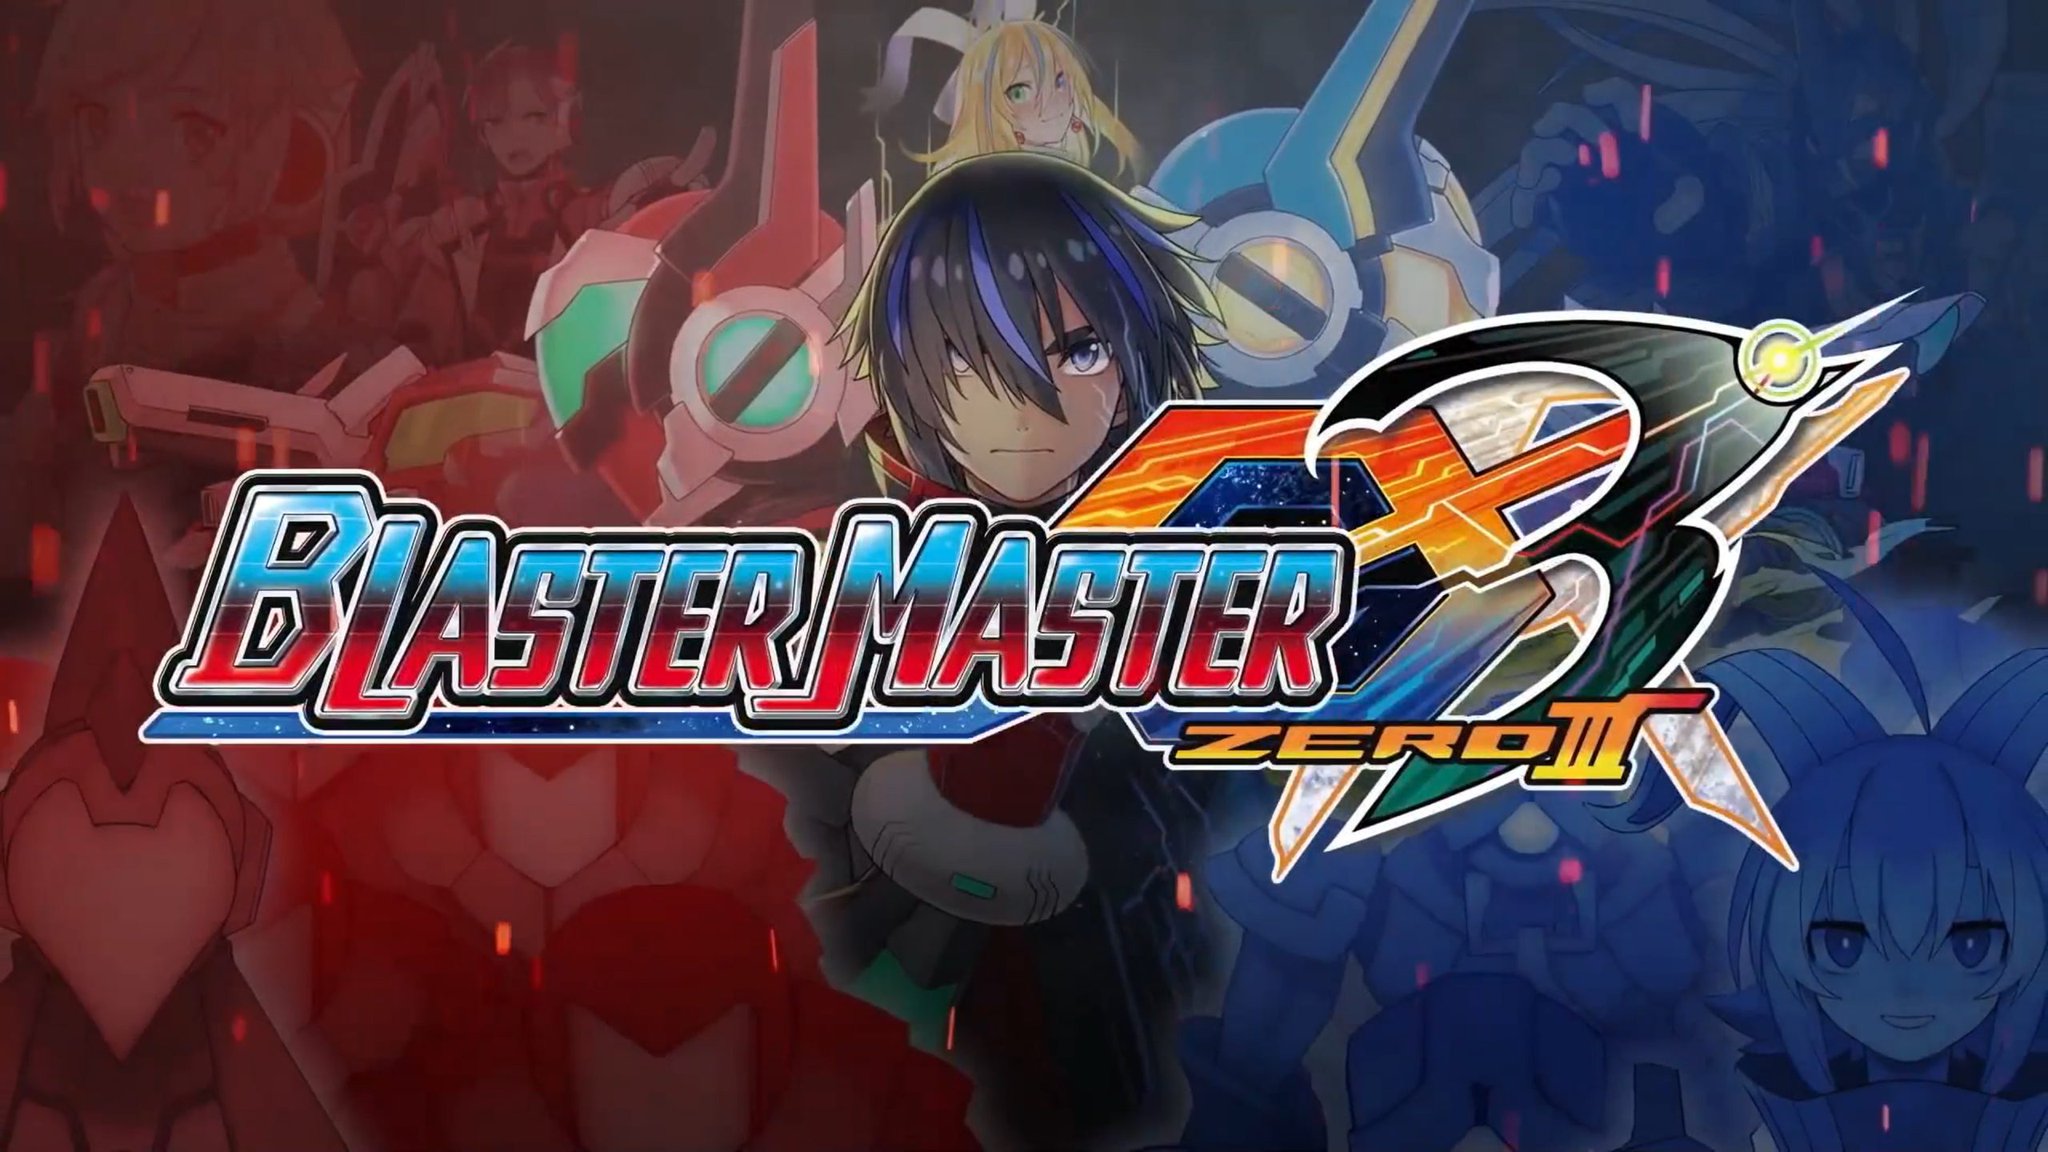 I-Blaster Master Zero 3 Imenyezelwe